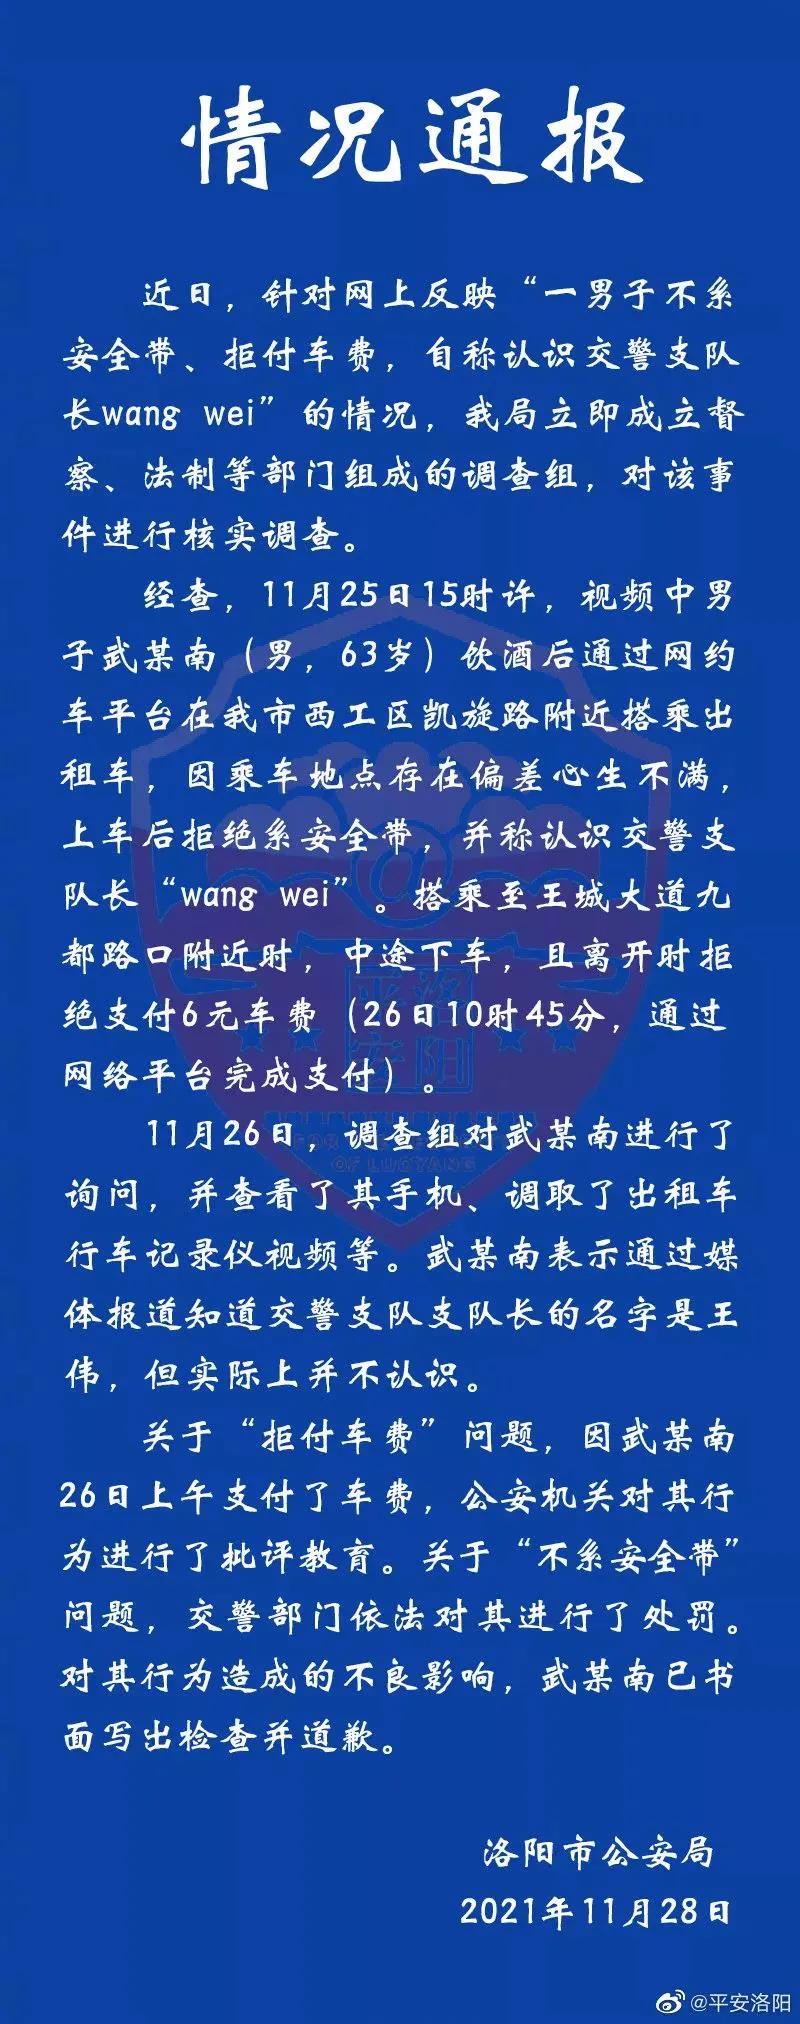 洛阳一男子拒付6元车费并称认识交警支队长“wang wei”，警方通报